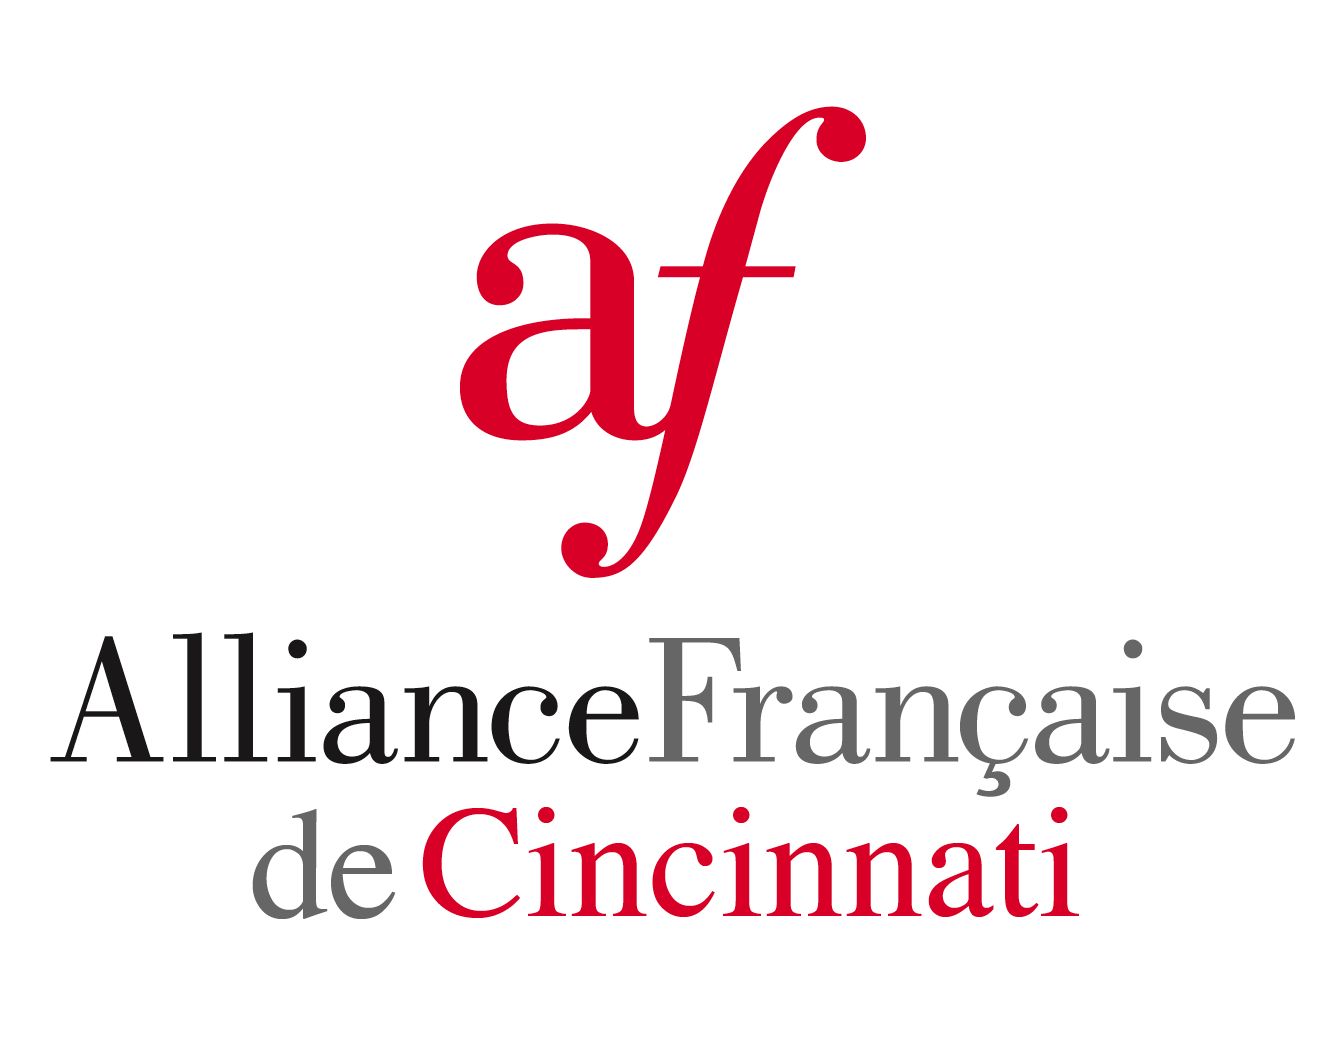 Alliance Francaise Cincinnati